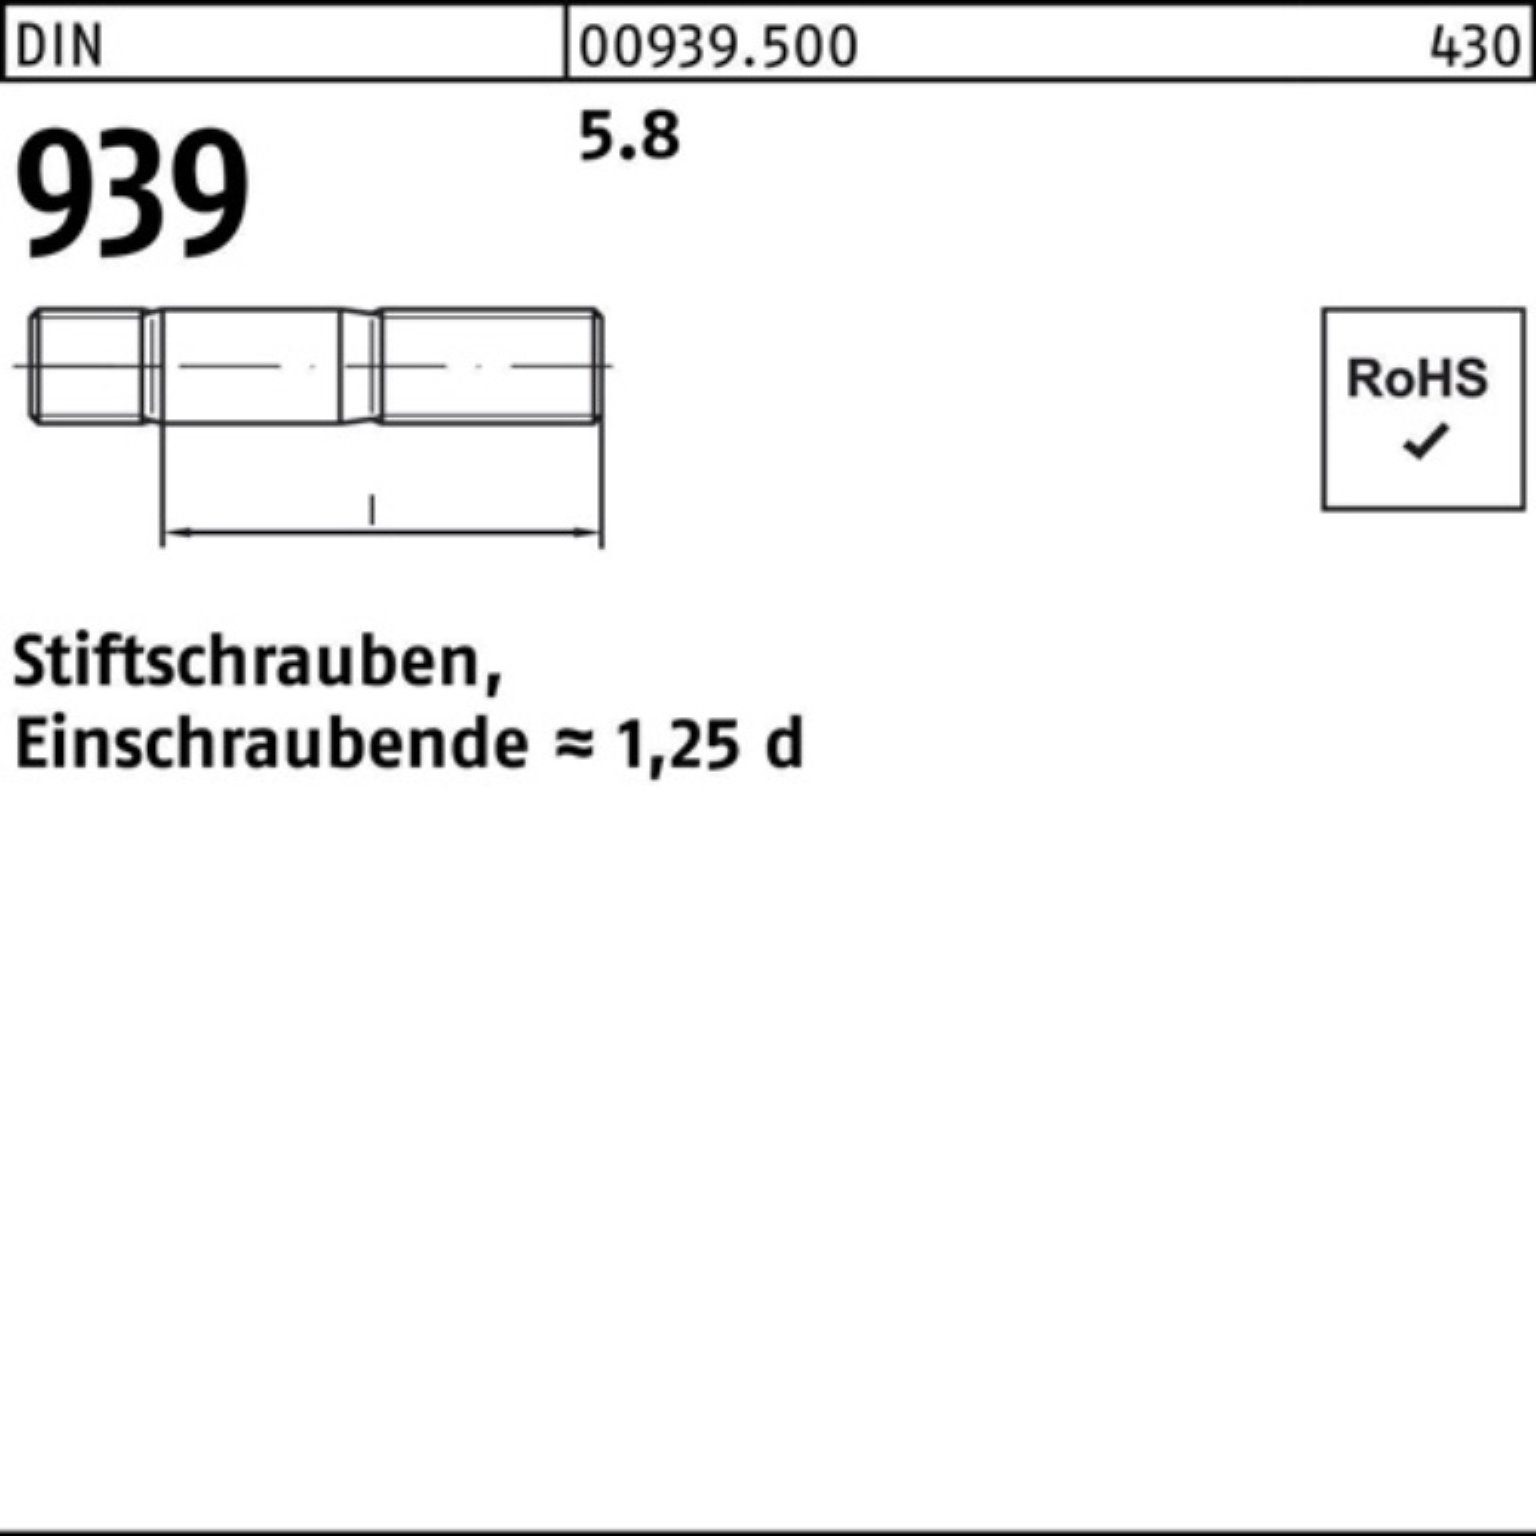 Pack 939 100er DIN 18 M6x Stiftschraube Einschraubende=1,25d S 5.8 Reyher 100 Stiftschraube